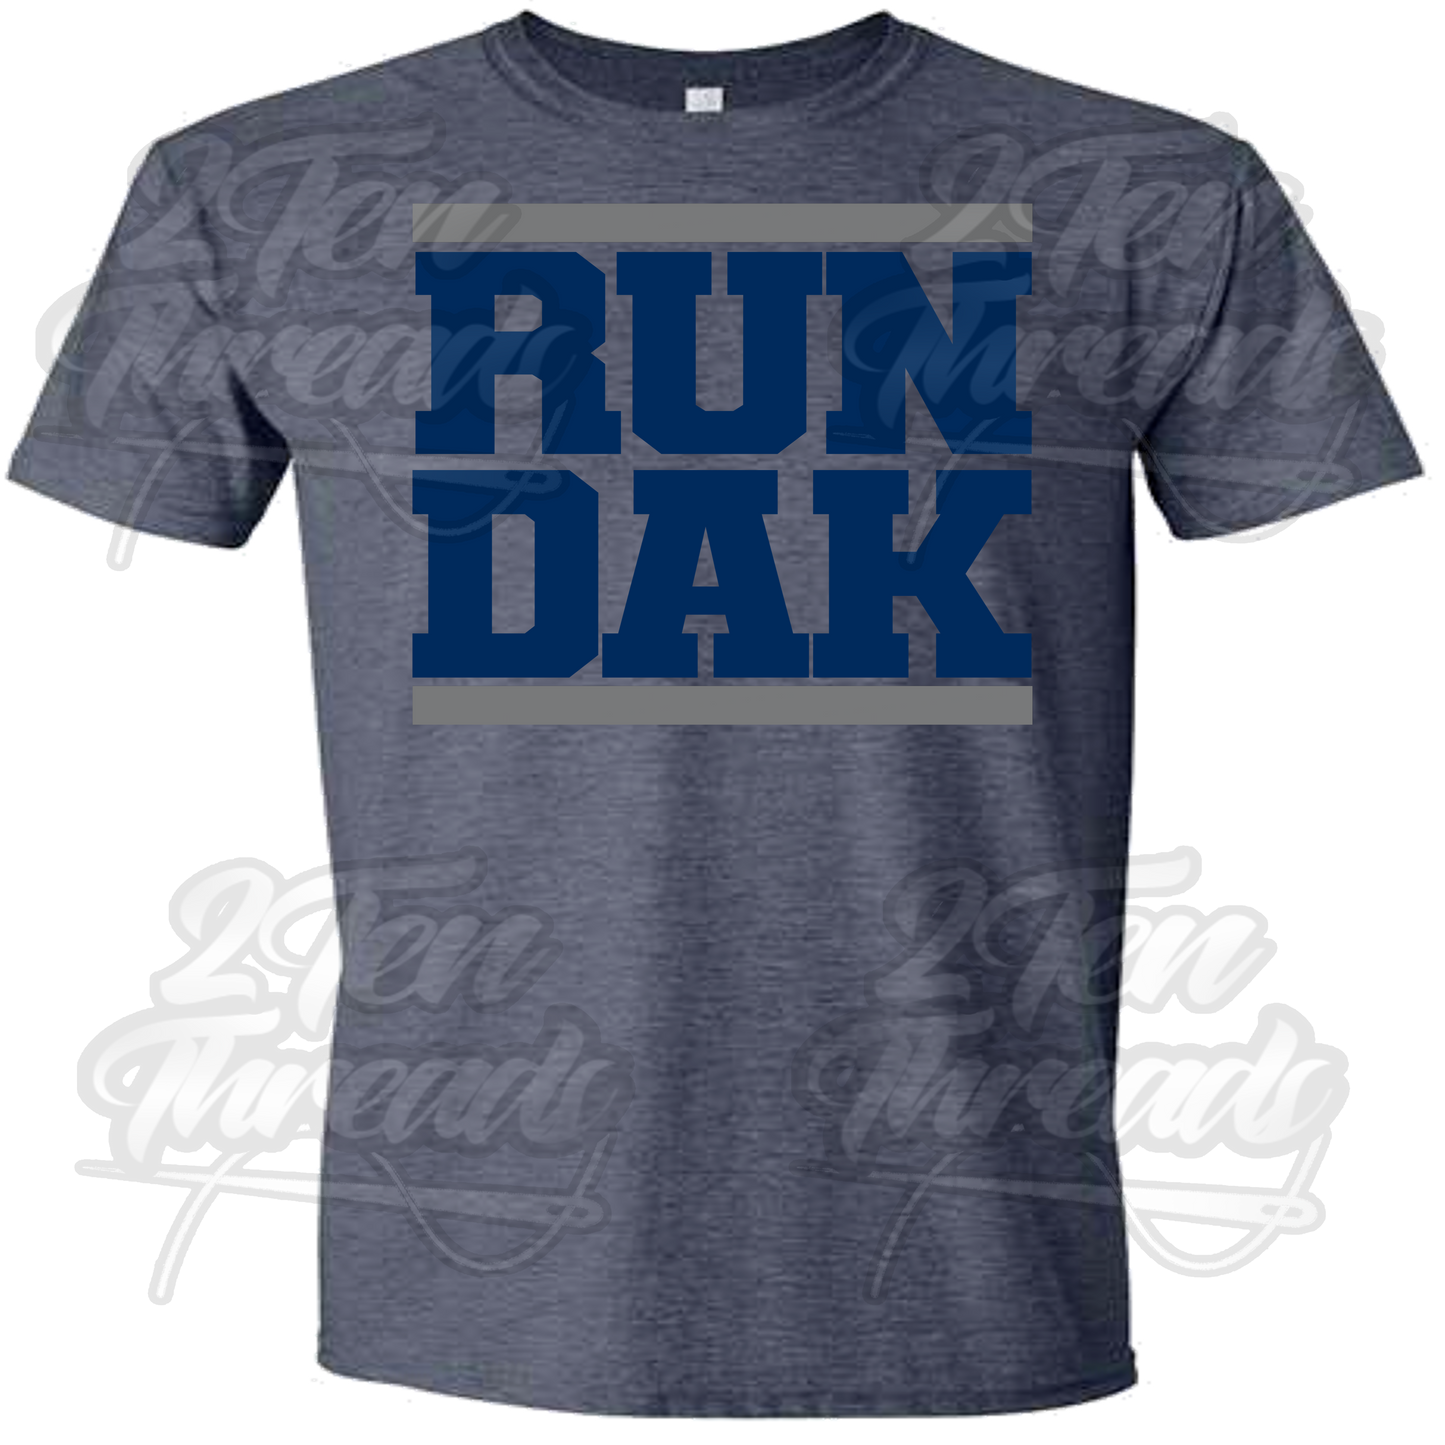 Run Dak Shirt